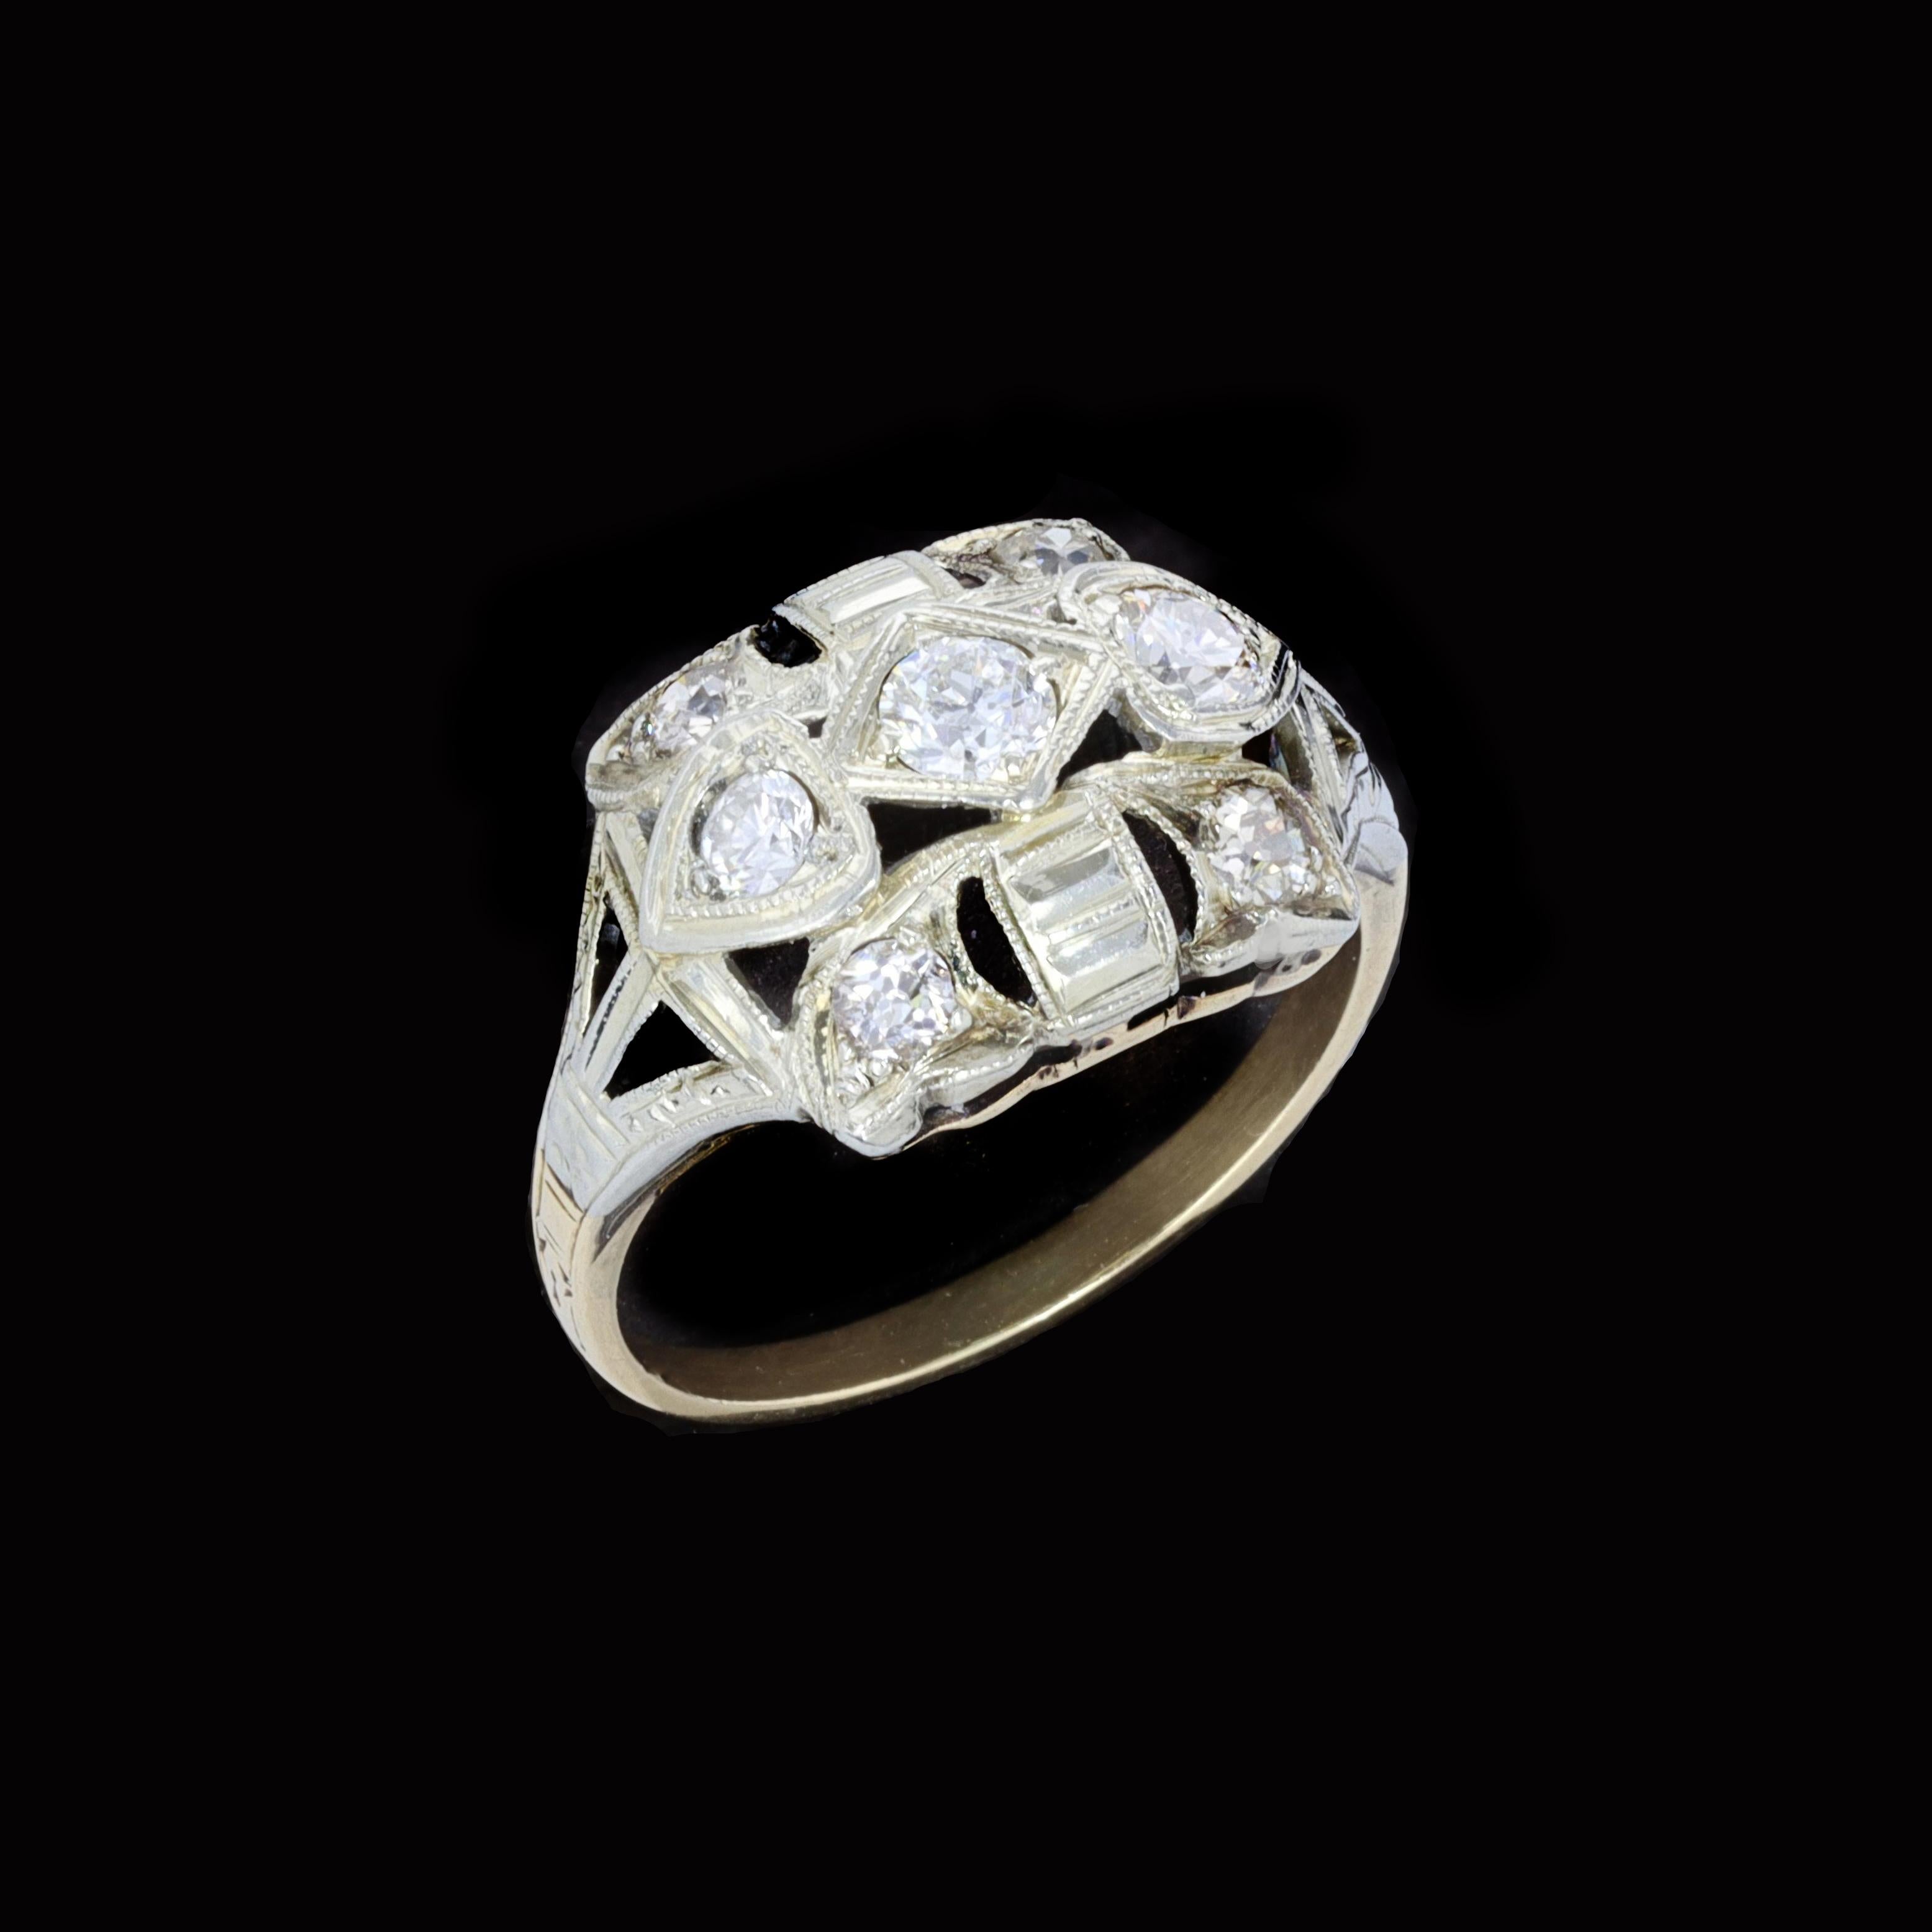 Drehen Sie Köpfe mit dieser Wende des 20. Jahrhunderts Edwardian Diamant 14K Gelbgold Ring mit sieben alten Mine geschnitten diamonds.The Diamanten wiegen etwa 0,40ctand der gesamte Ring wiegt 2,3 Gramm. Größe 4 3/4

